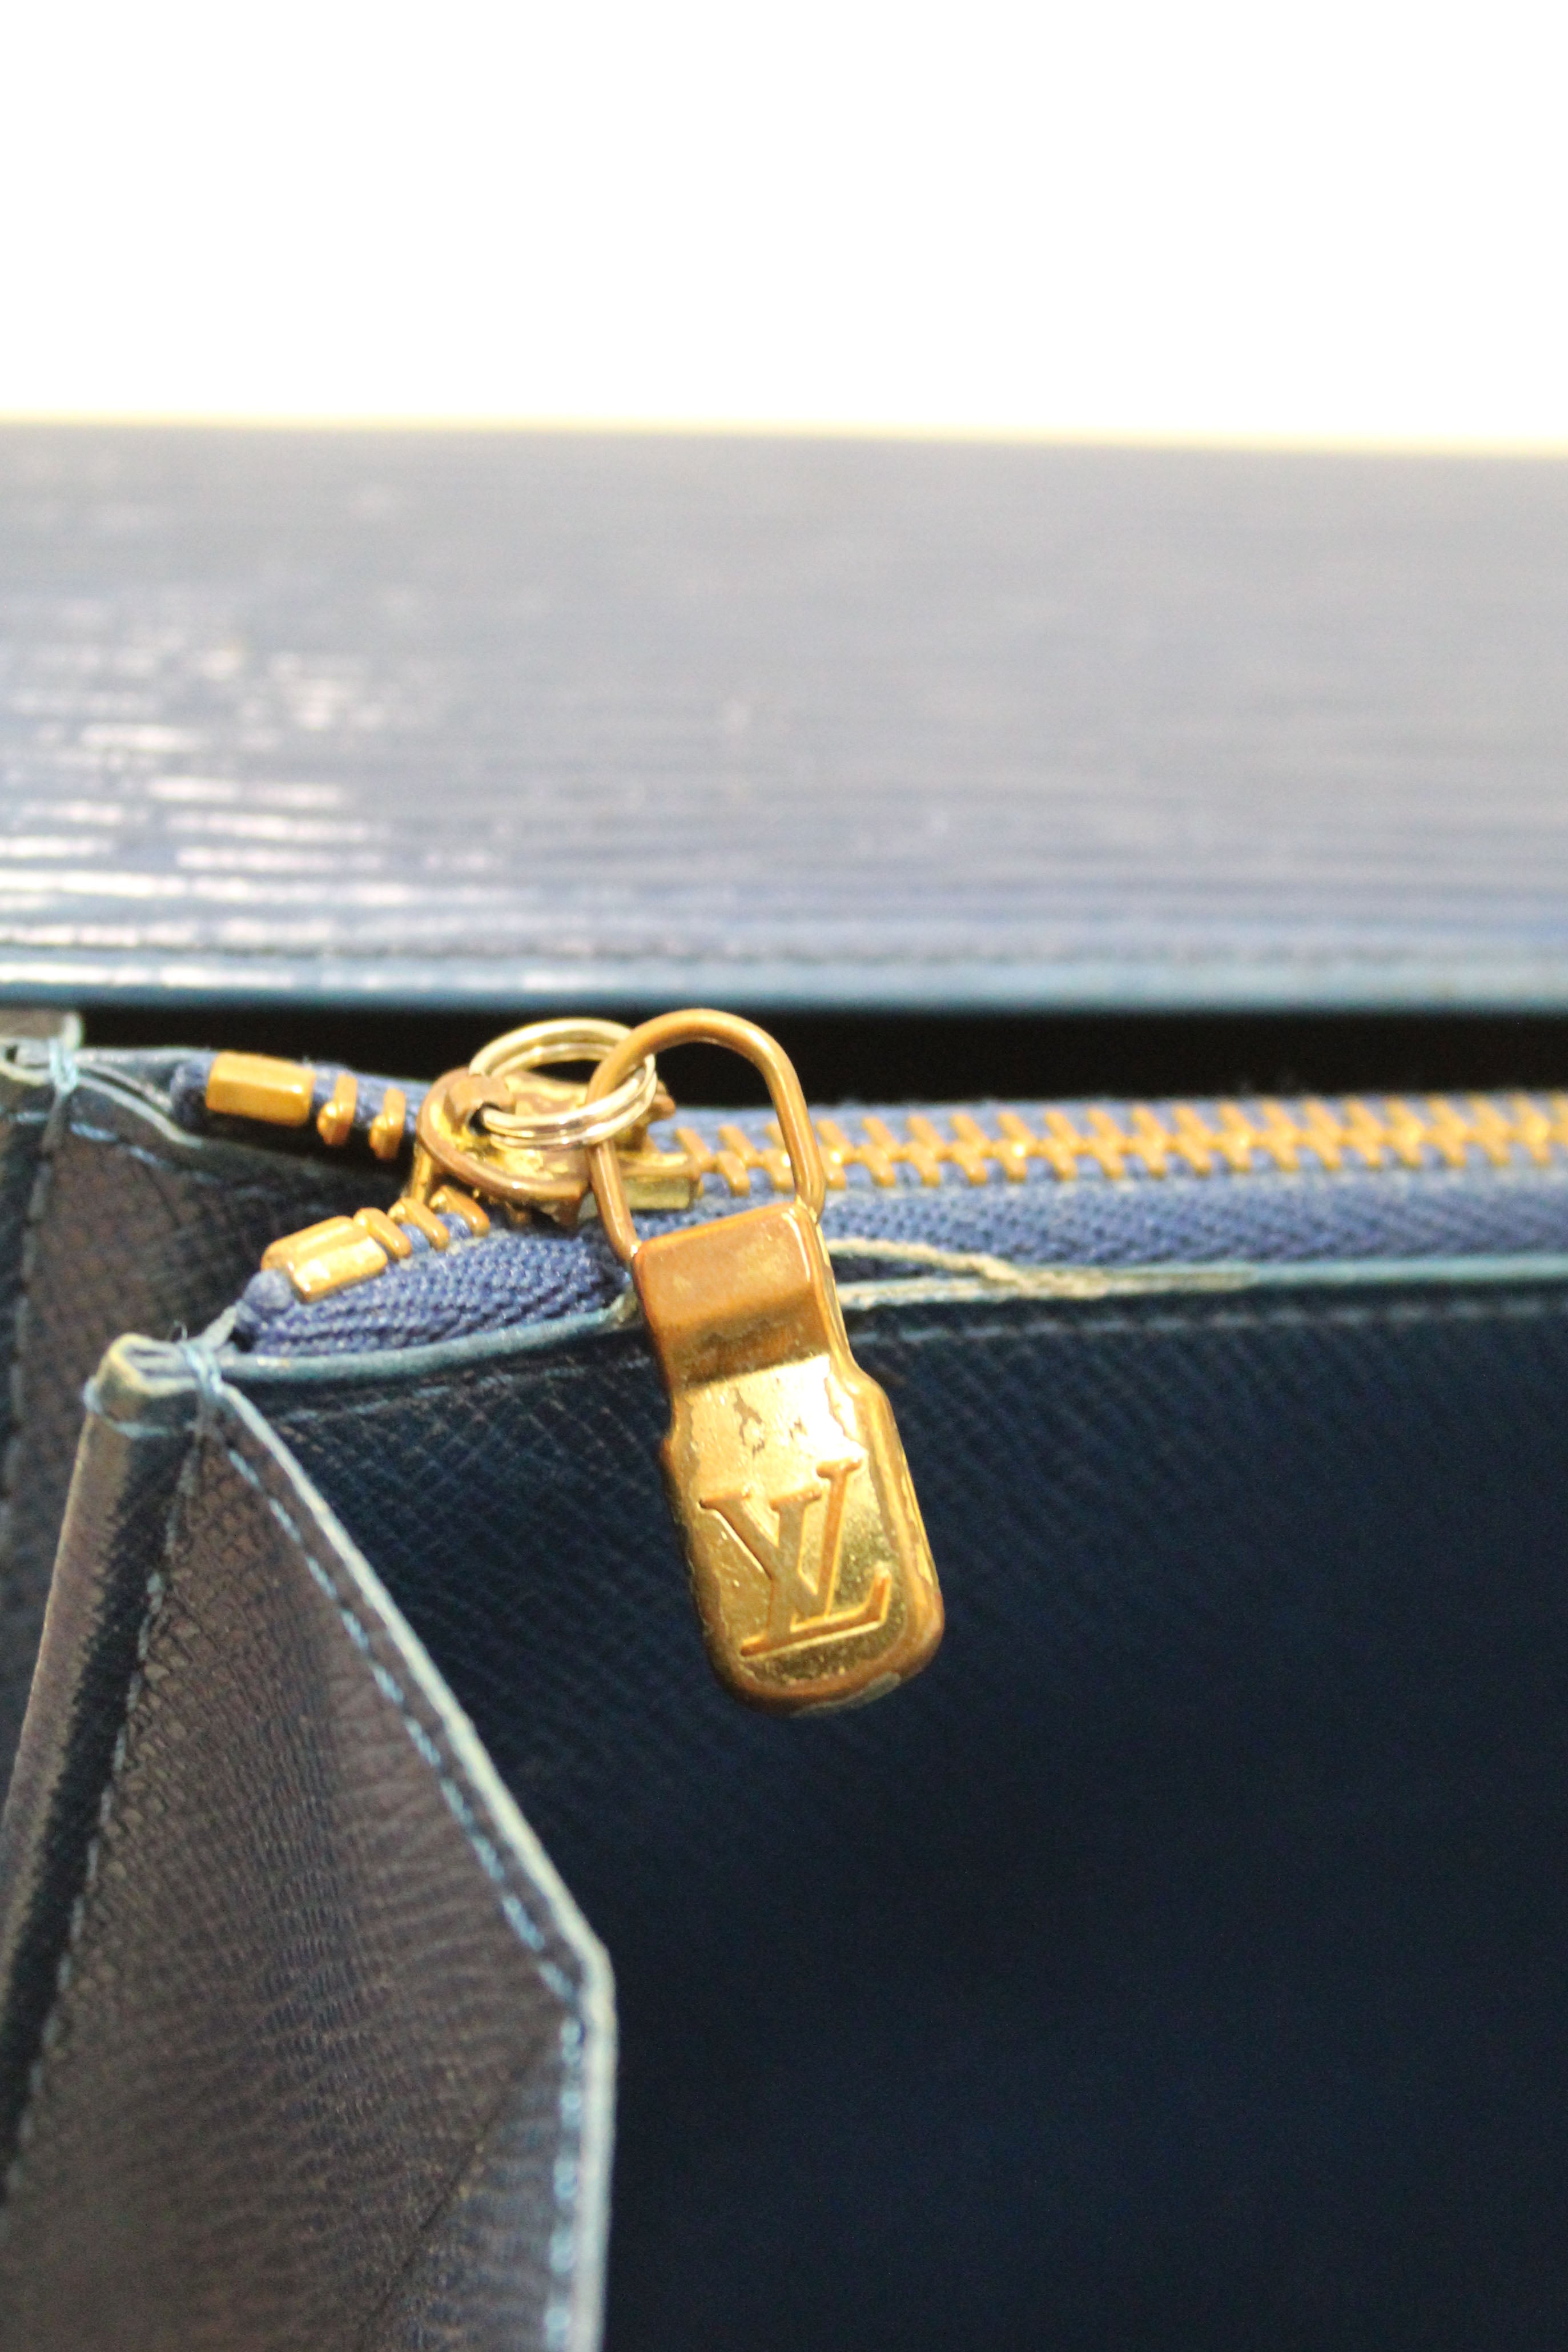 Louis Vuitton Yellow EPI Leather Sarah Wallet